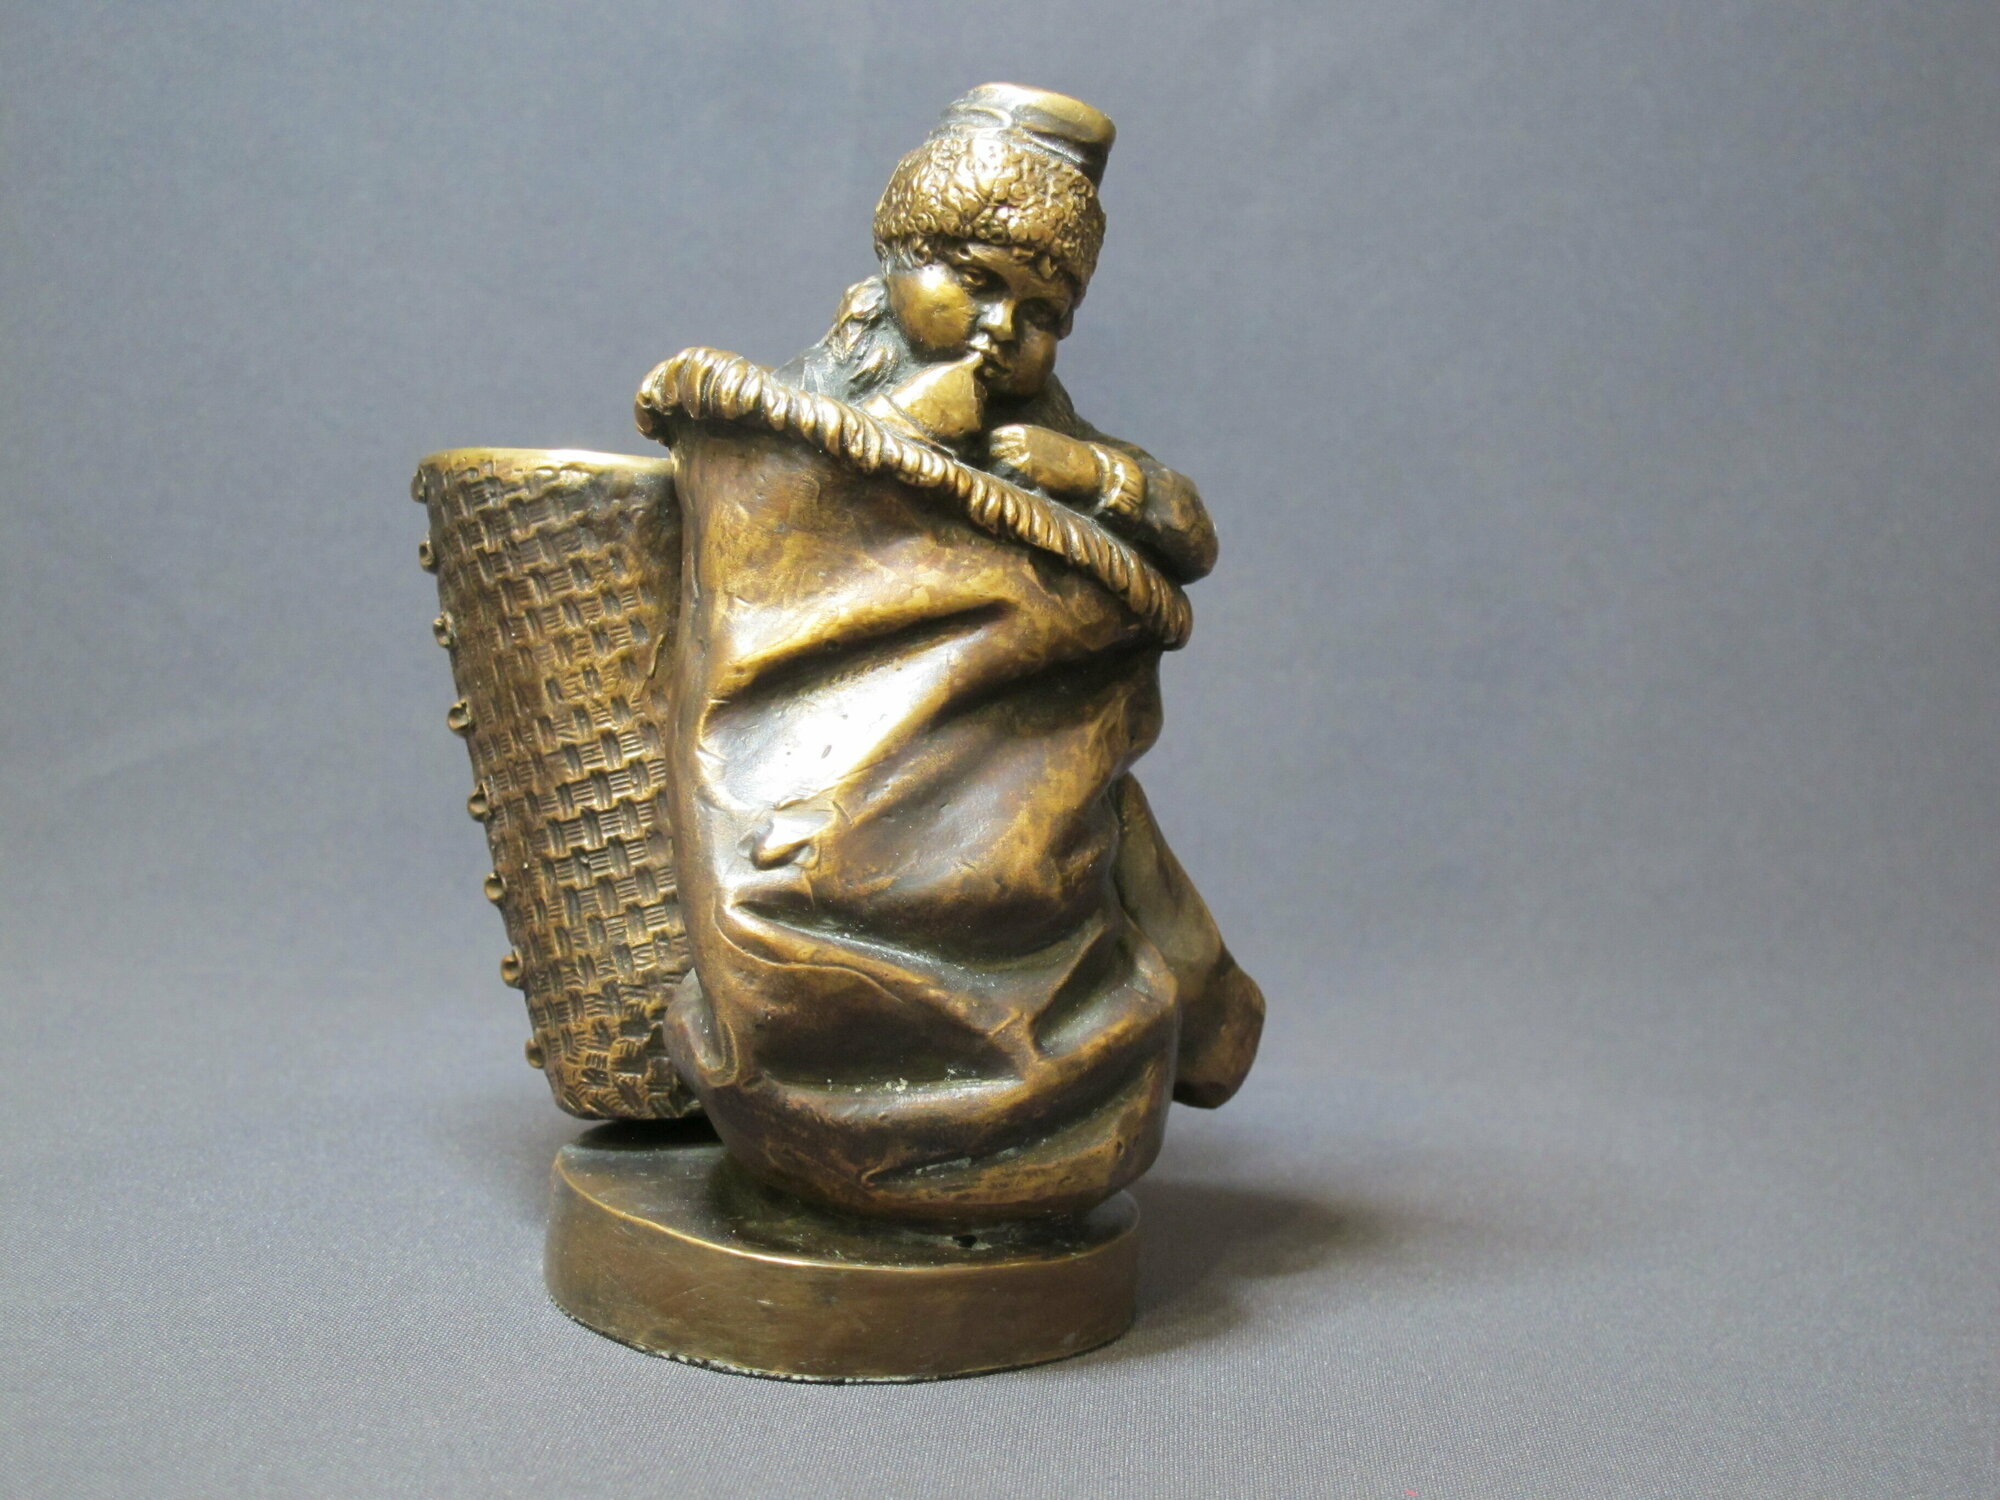 Скульптура из бронзы карандашница "Рукавичка". Фигурки, статуи, статуэтки, гобелены, панно, барельефы и др изделия из бронзы